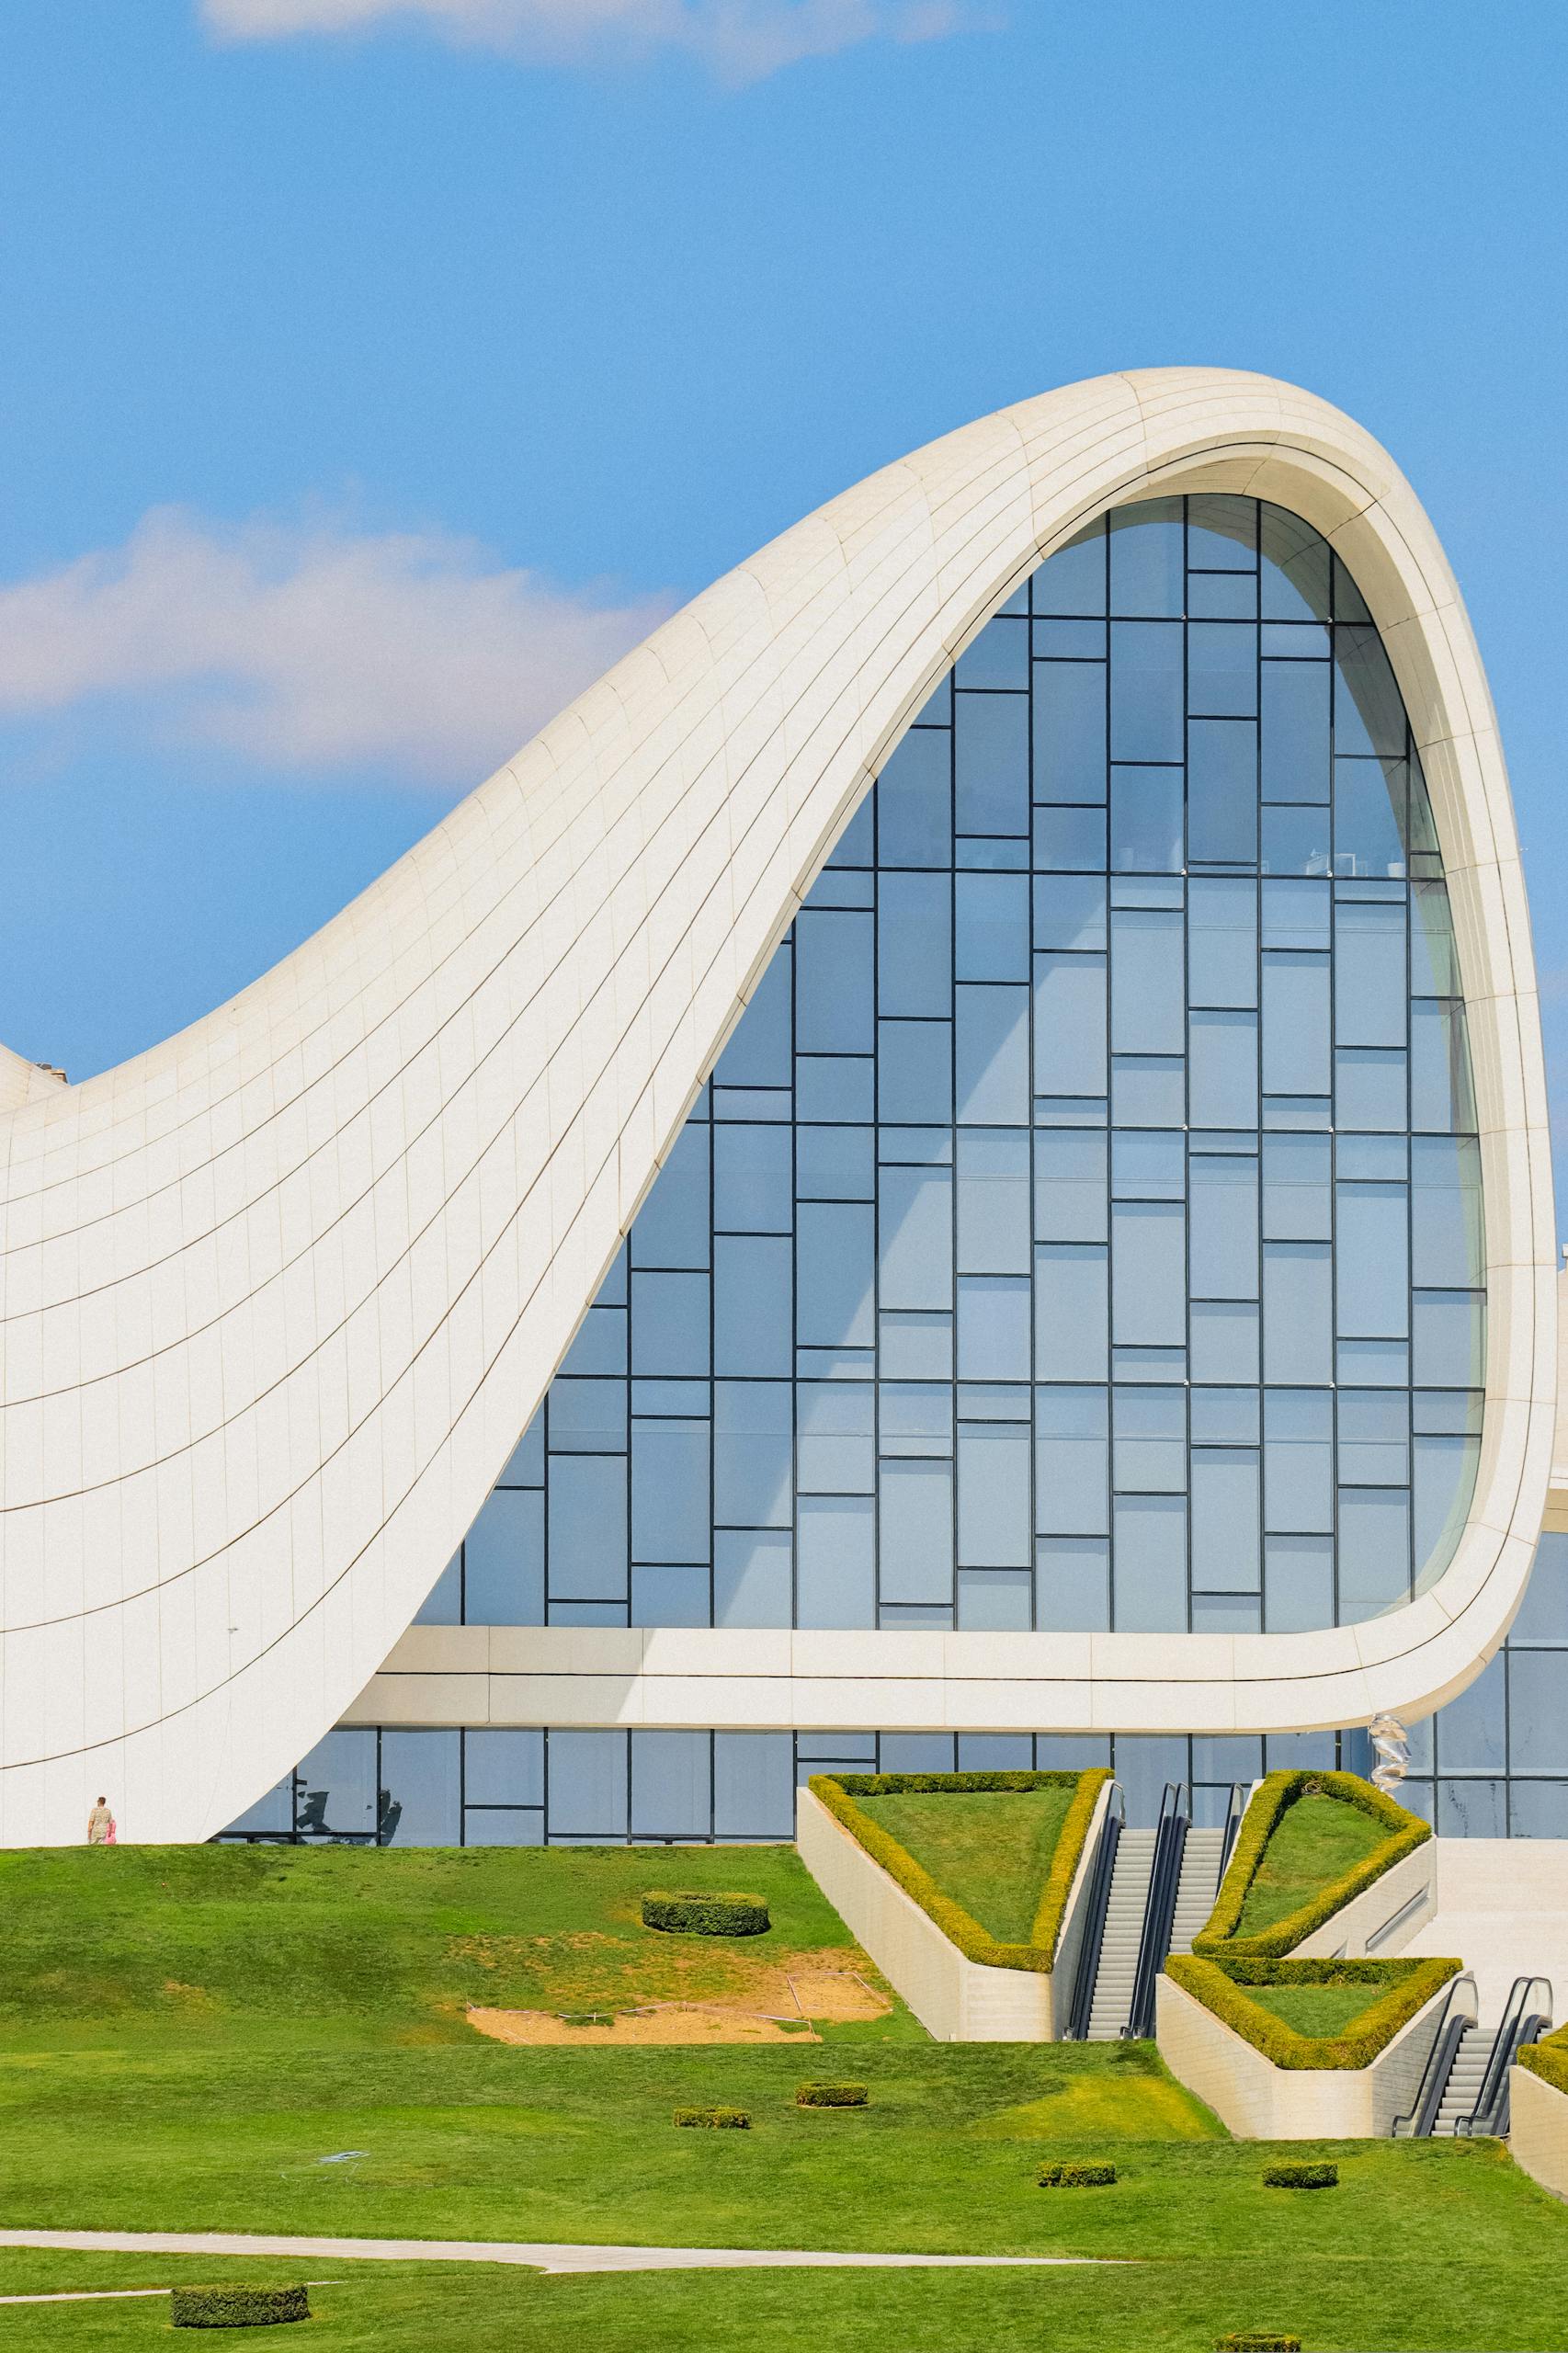 Facade of the Heydar Aliyev Centre in Baku, Azerbaijan